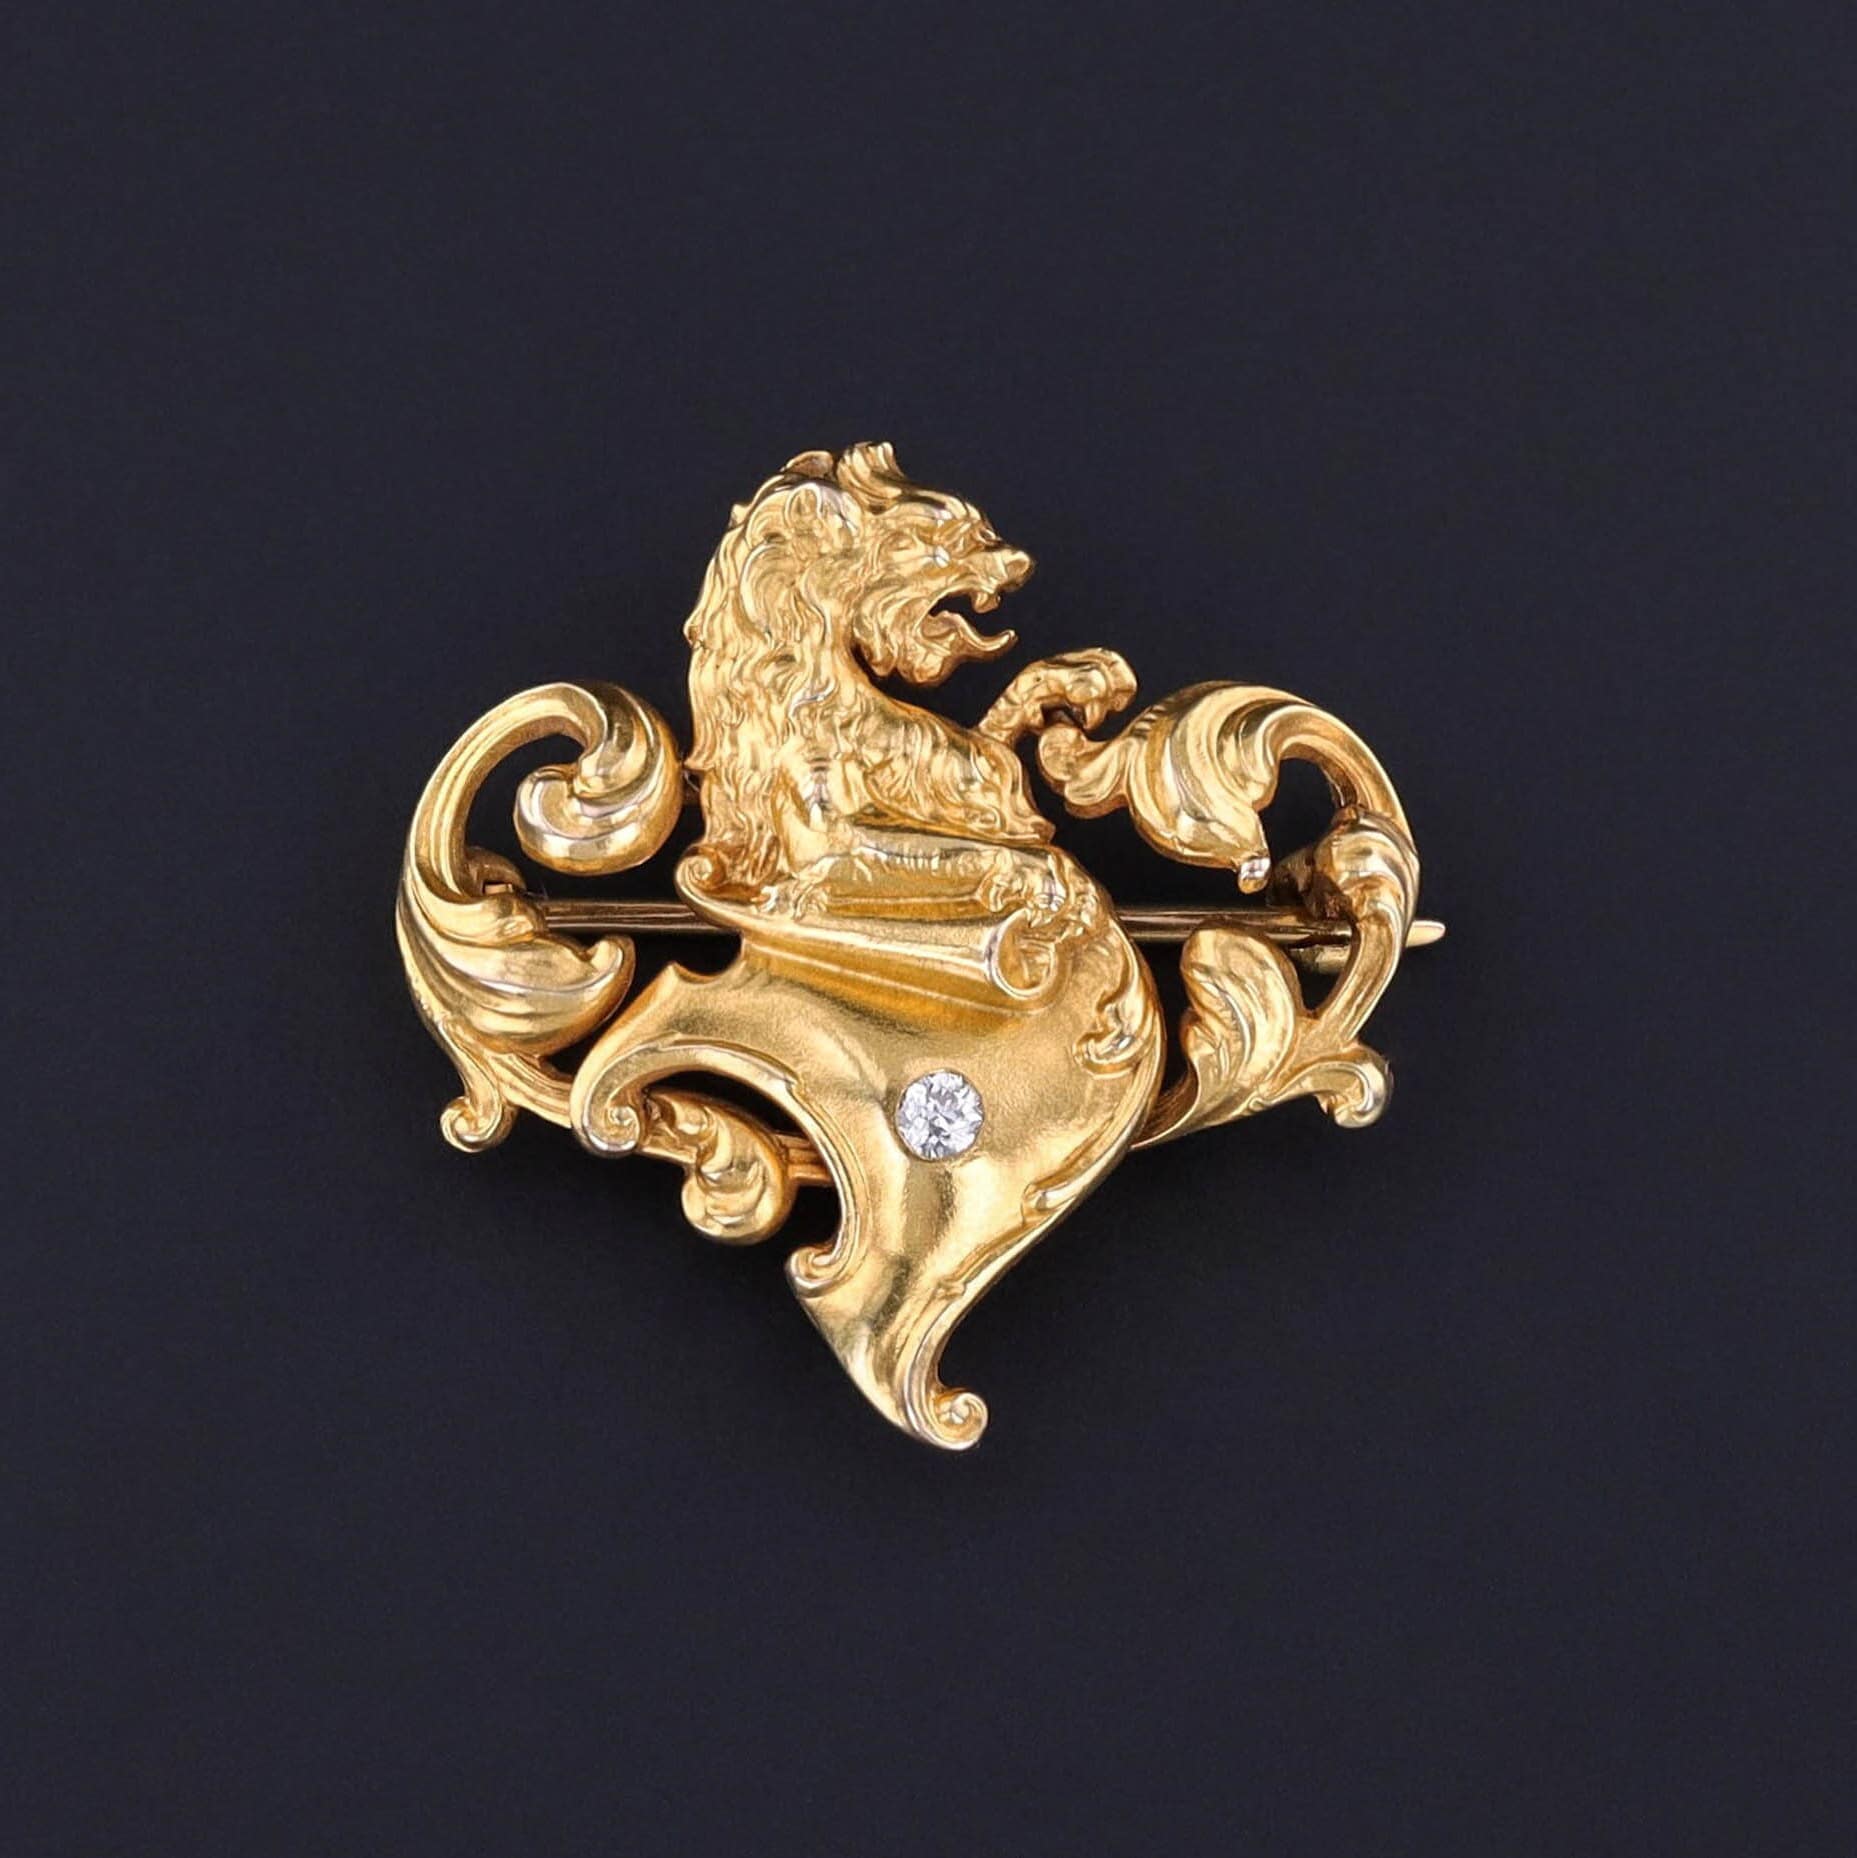 Antique Lion Brooch of 18k Gold